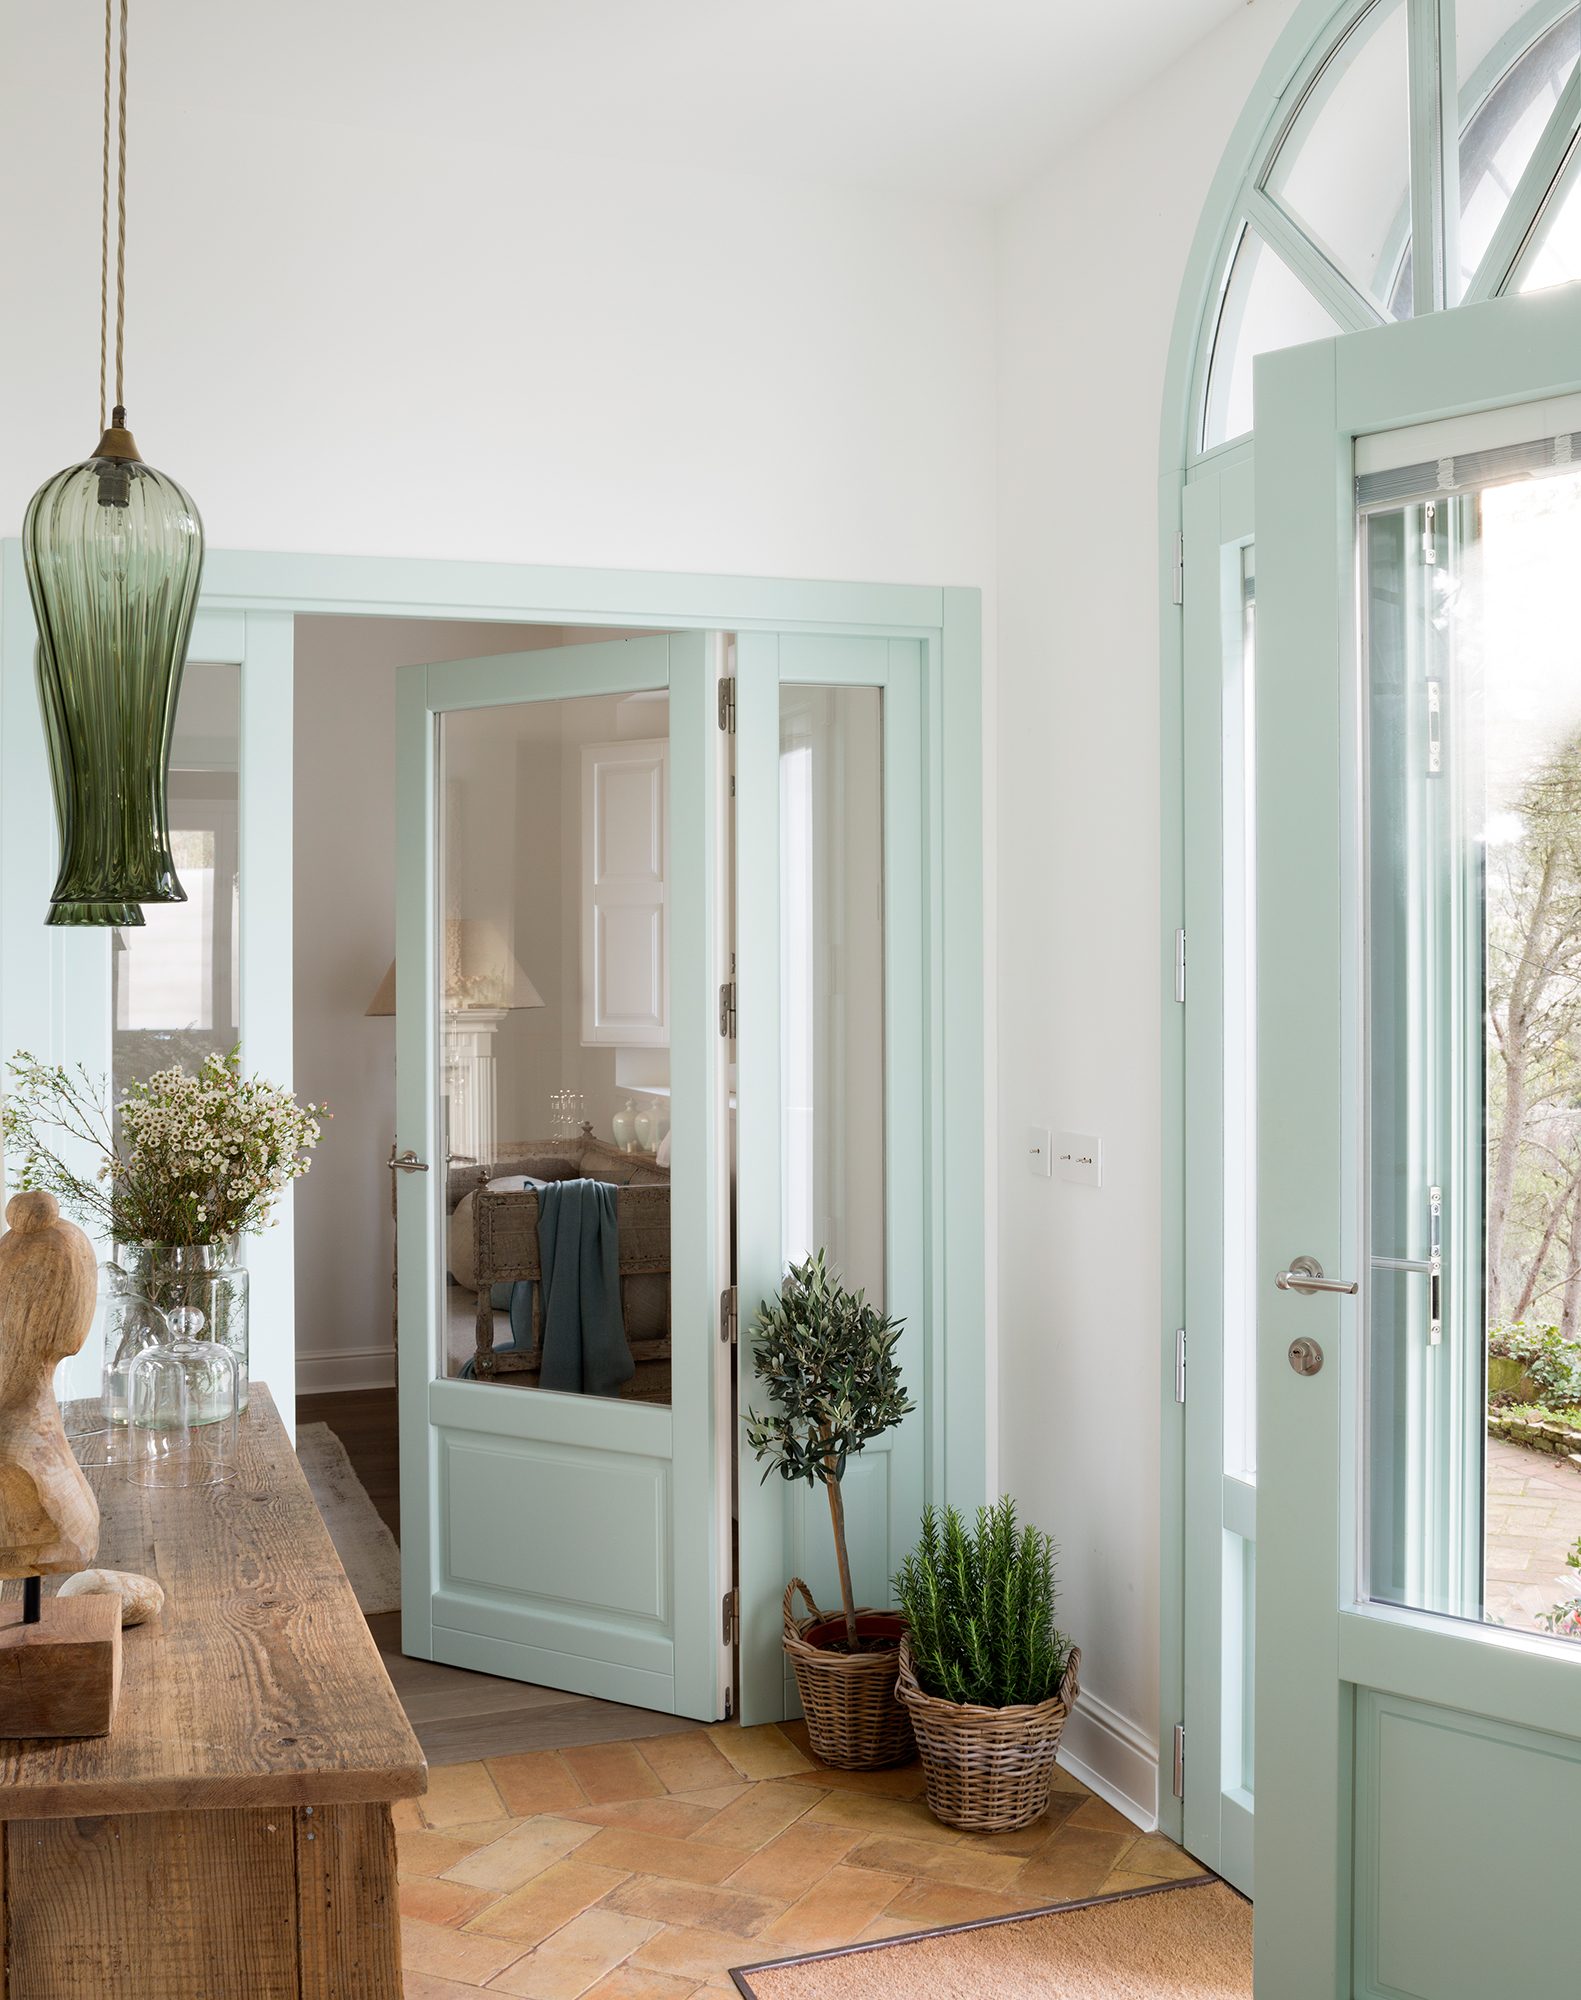 Recibidor de una casa de estilo clásico con una puerta en n verde candy.